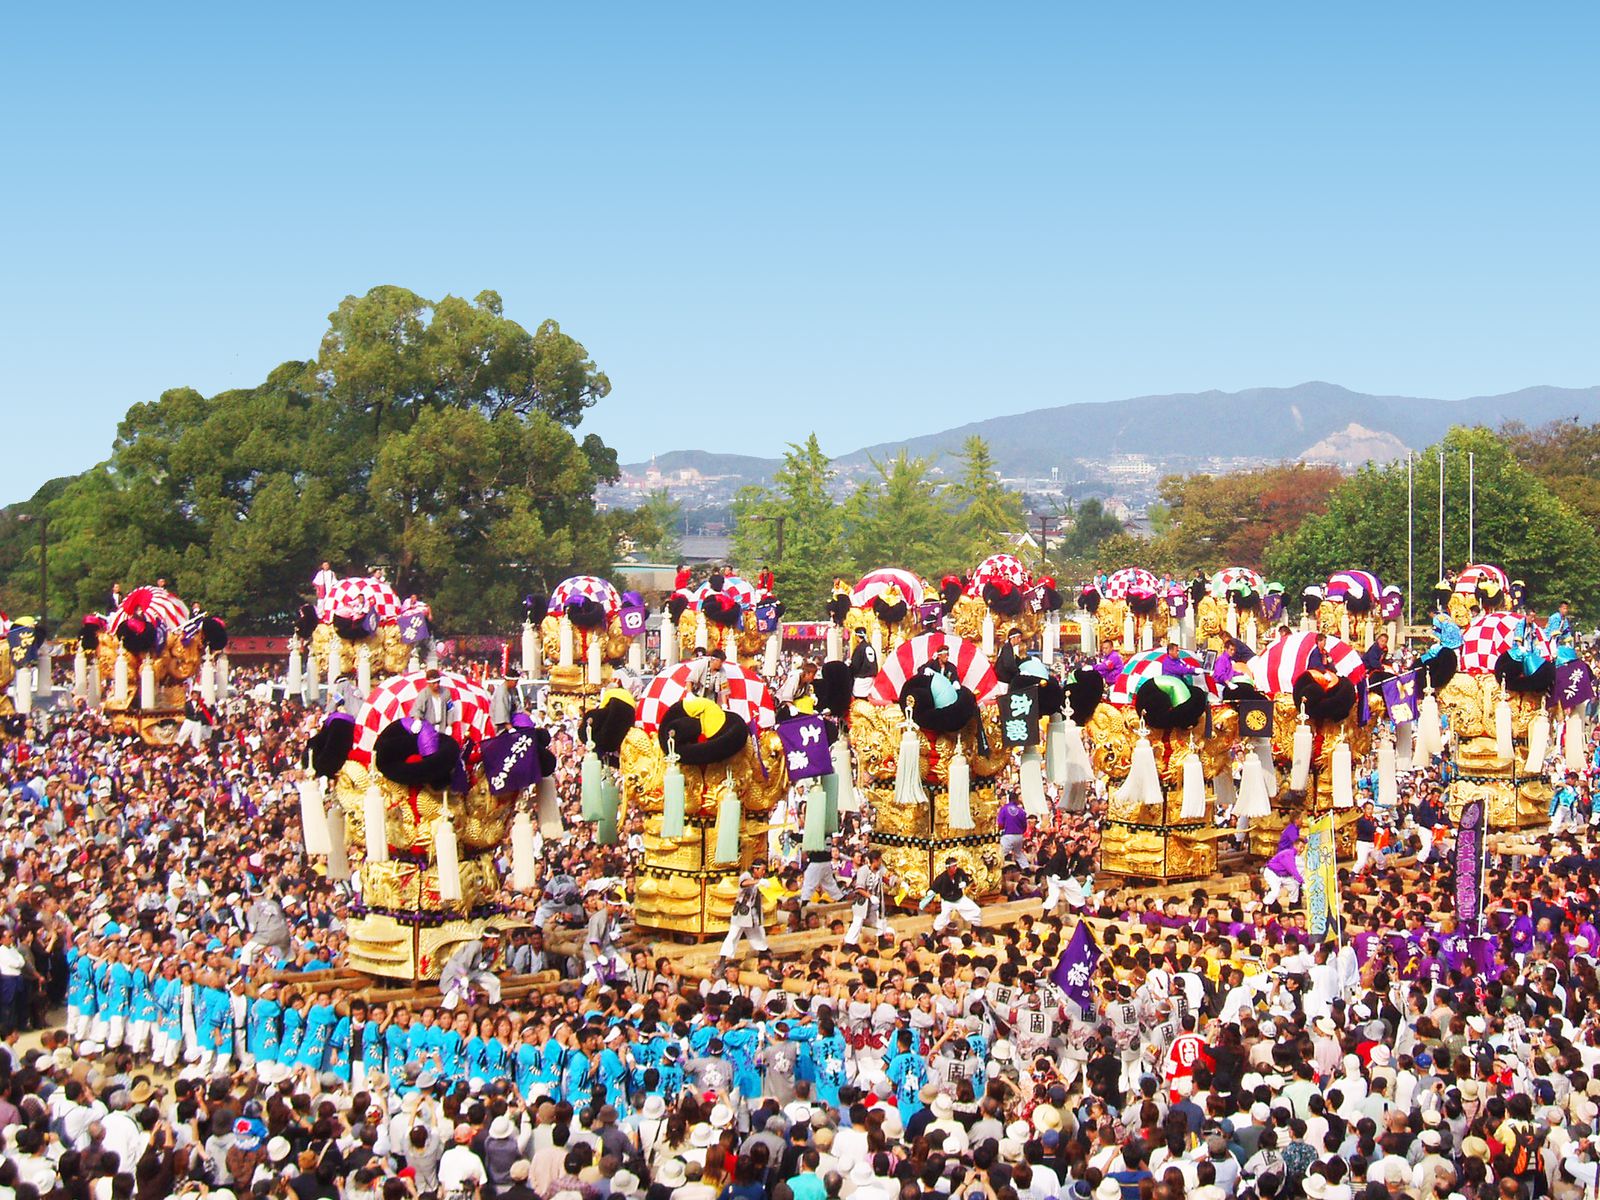 終了 熱気溢れる大迫力の男祭り 愛媛で 新居浜太鼓祭り が今年も開催 Retrip リトリップ